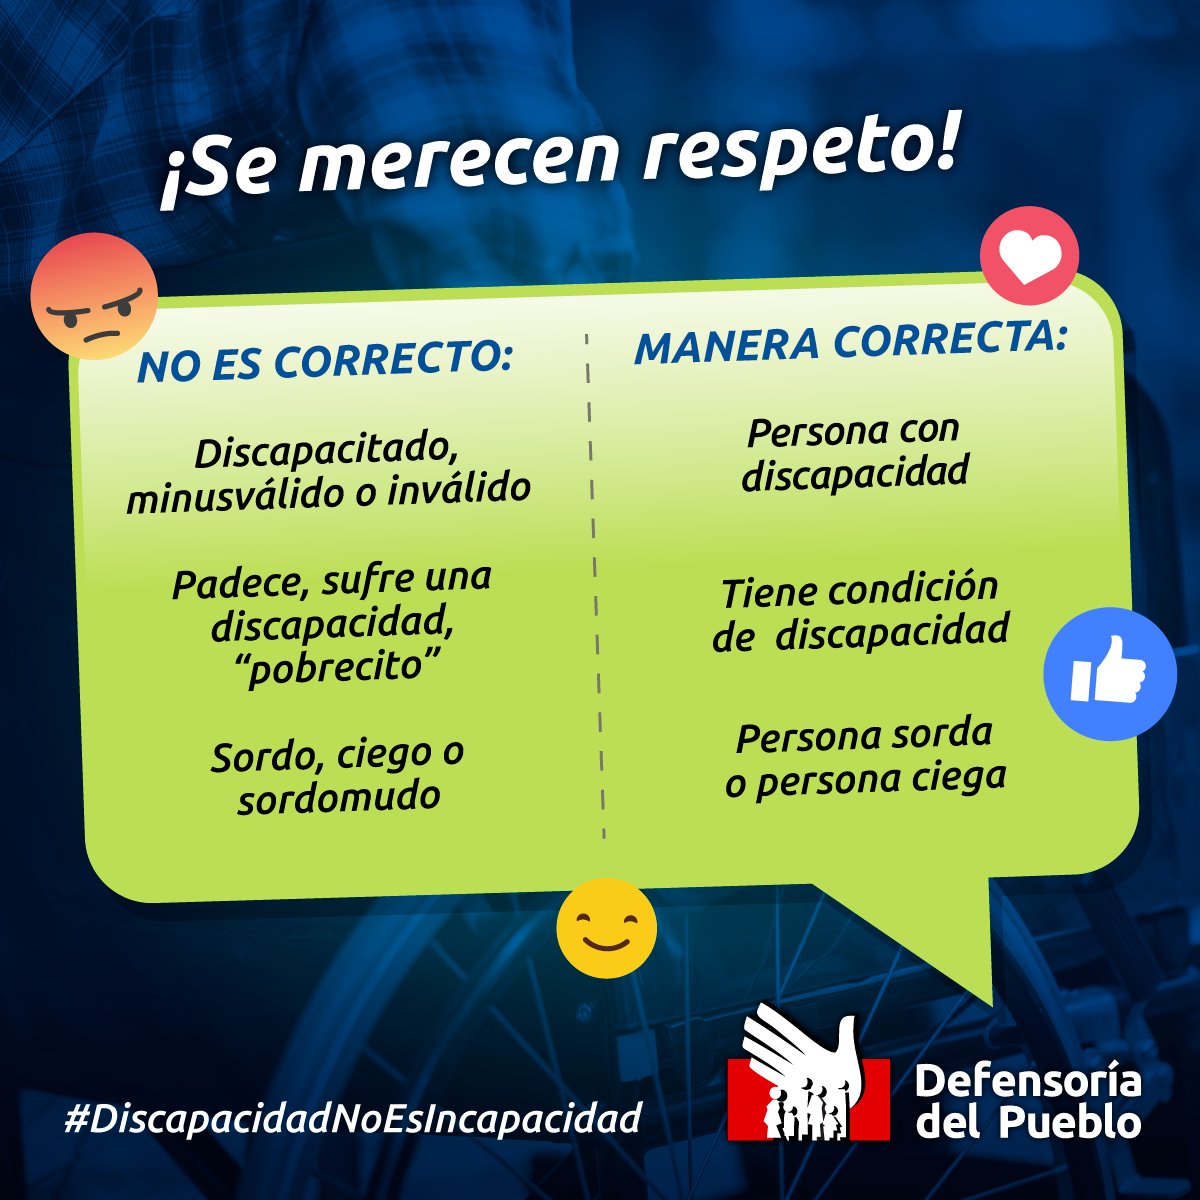 💪♿#DiscapacidadNoEsIncapacidad El respeto y el trato a las personas con discapacidad es importante.
 🎉🏅#JugamosTodos
#Panamericanos2019